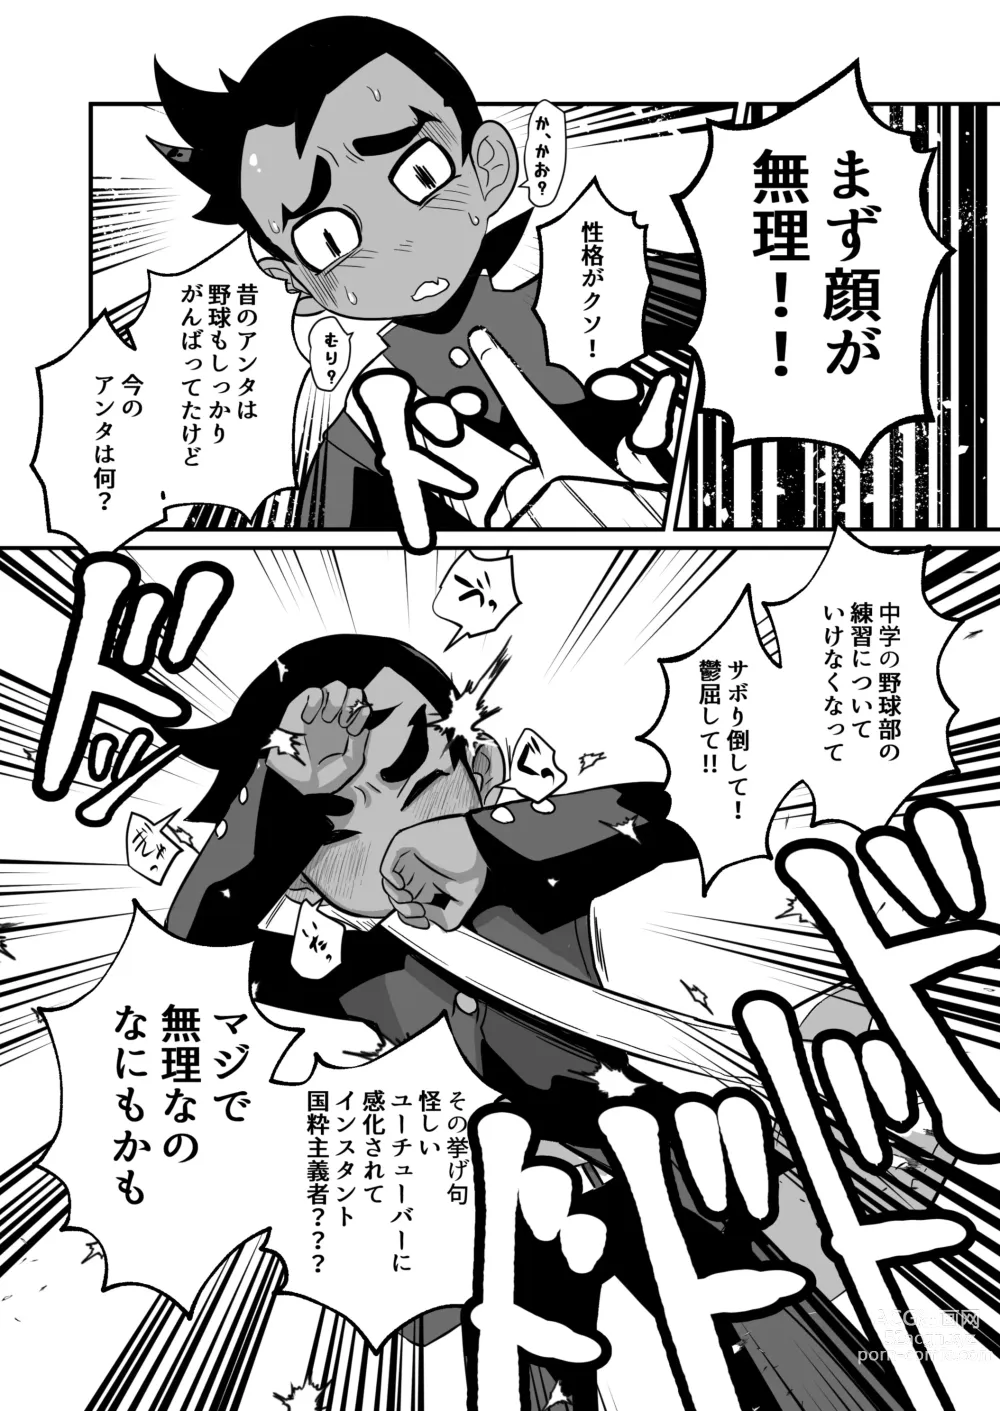 Page 8 of doujinshi Seiyoku no Hanashi.